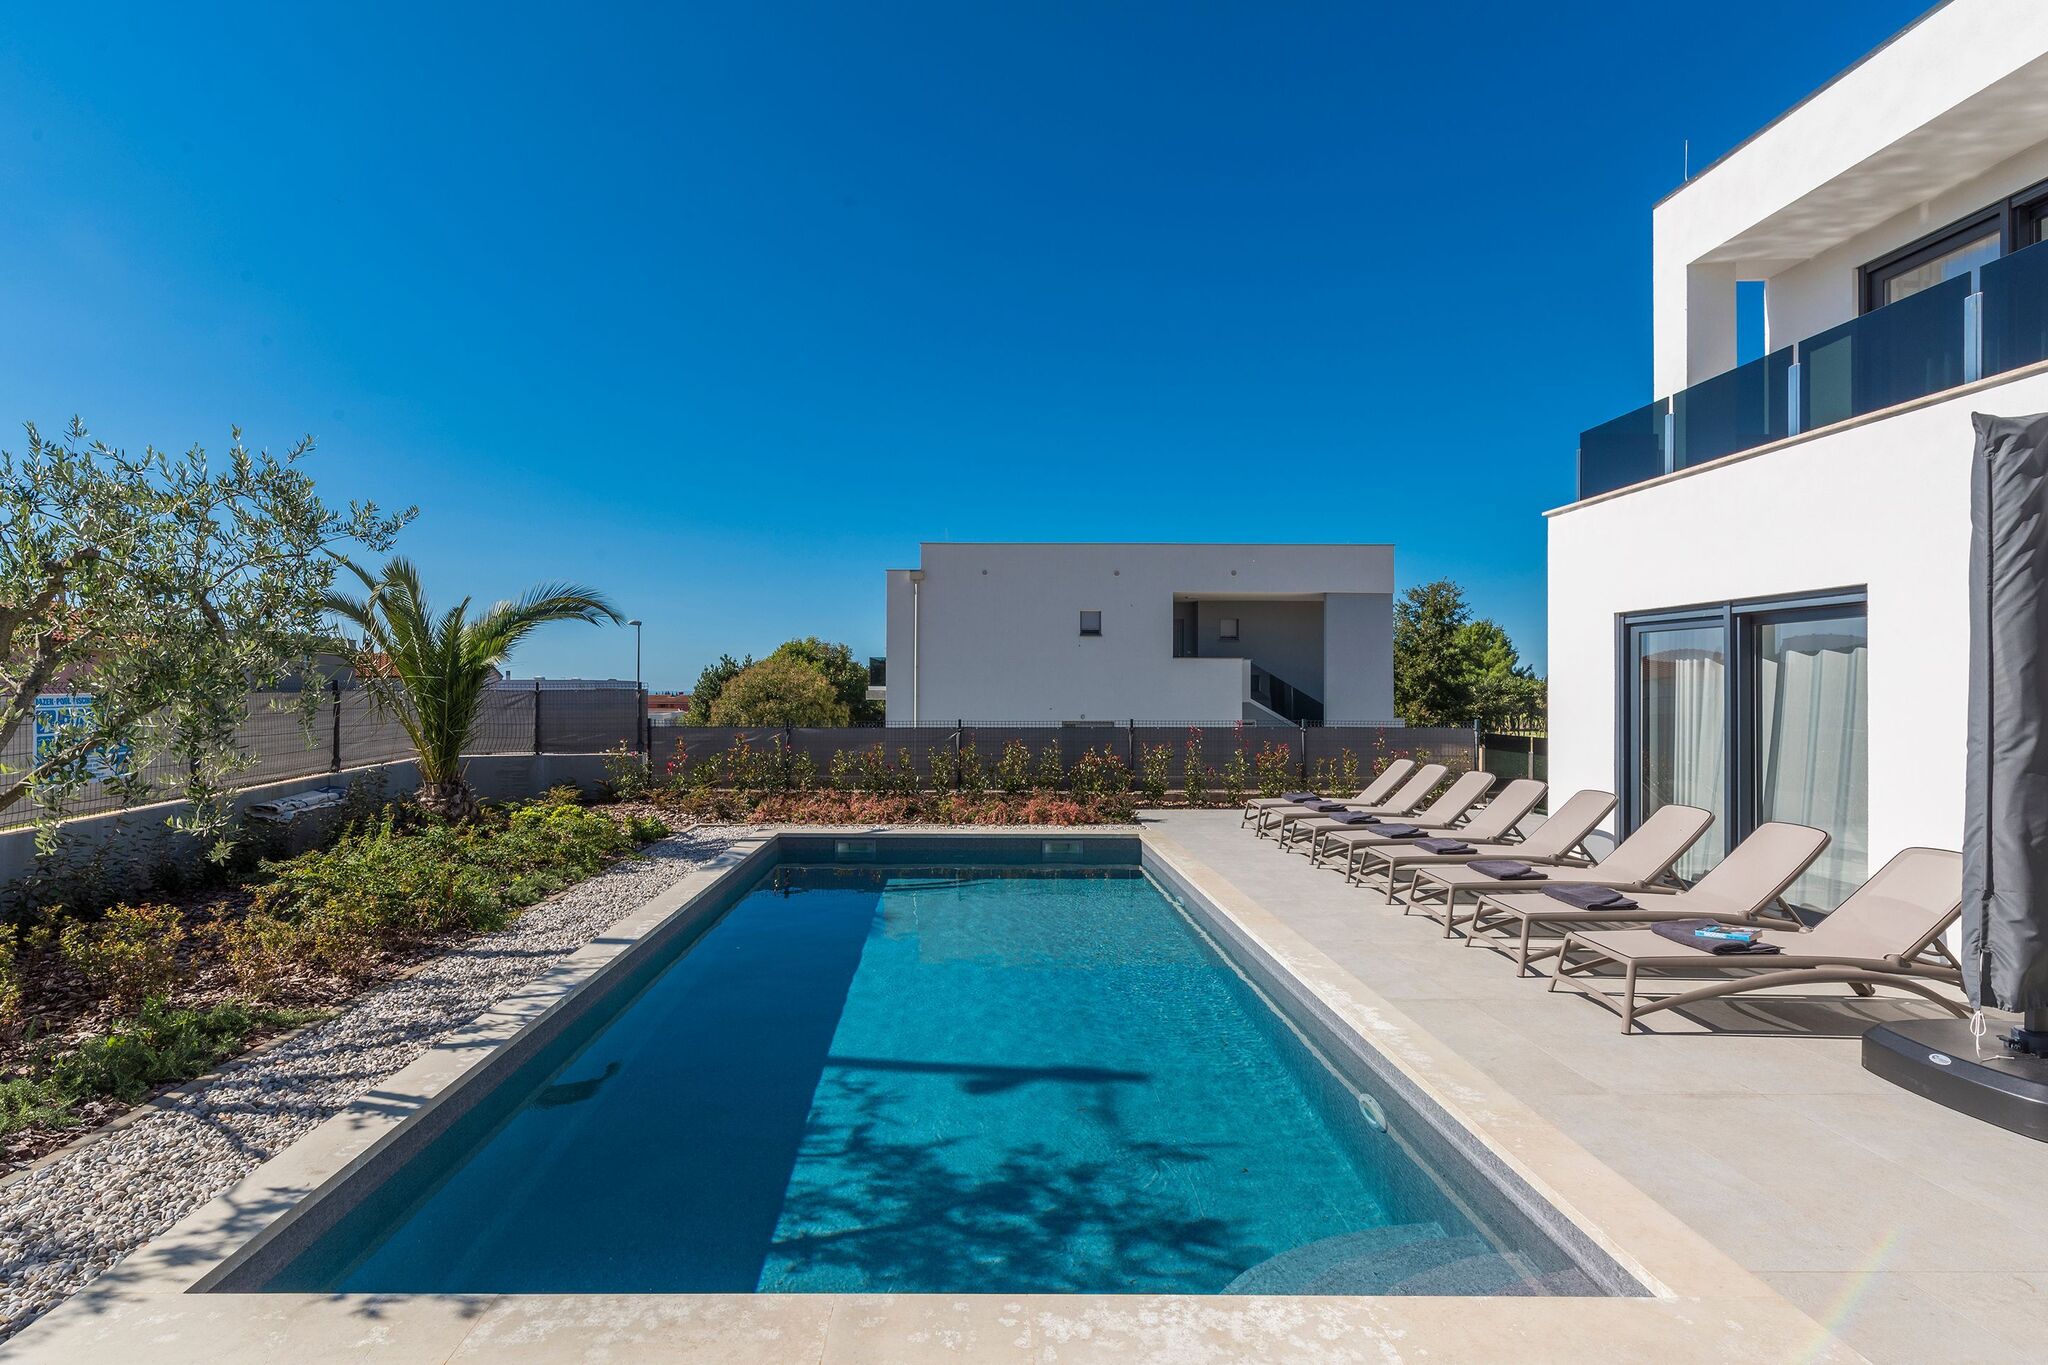 Moderne villa op slechts 2 km van de Istrische stad Novigrad met prive zwembad